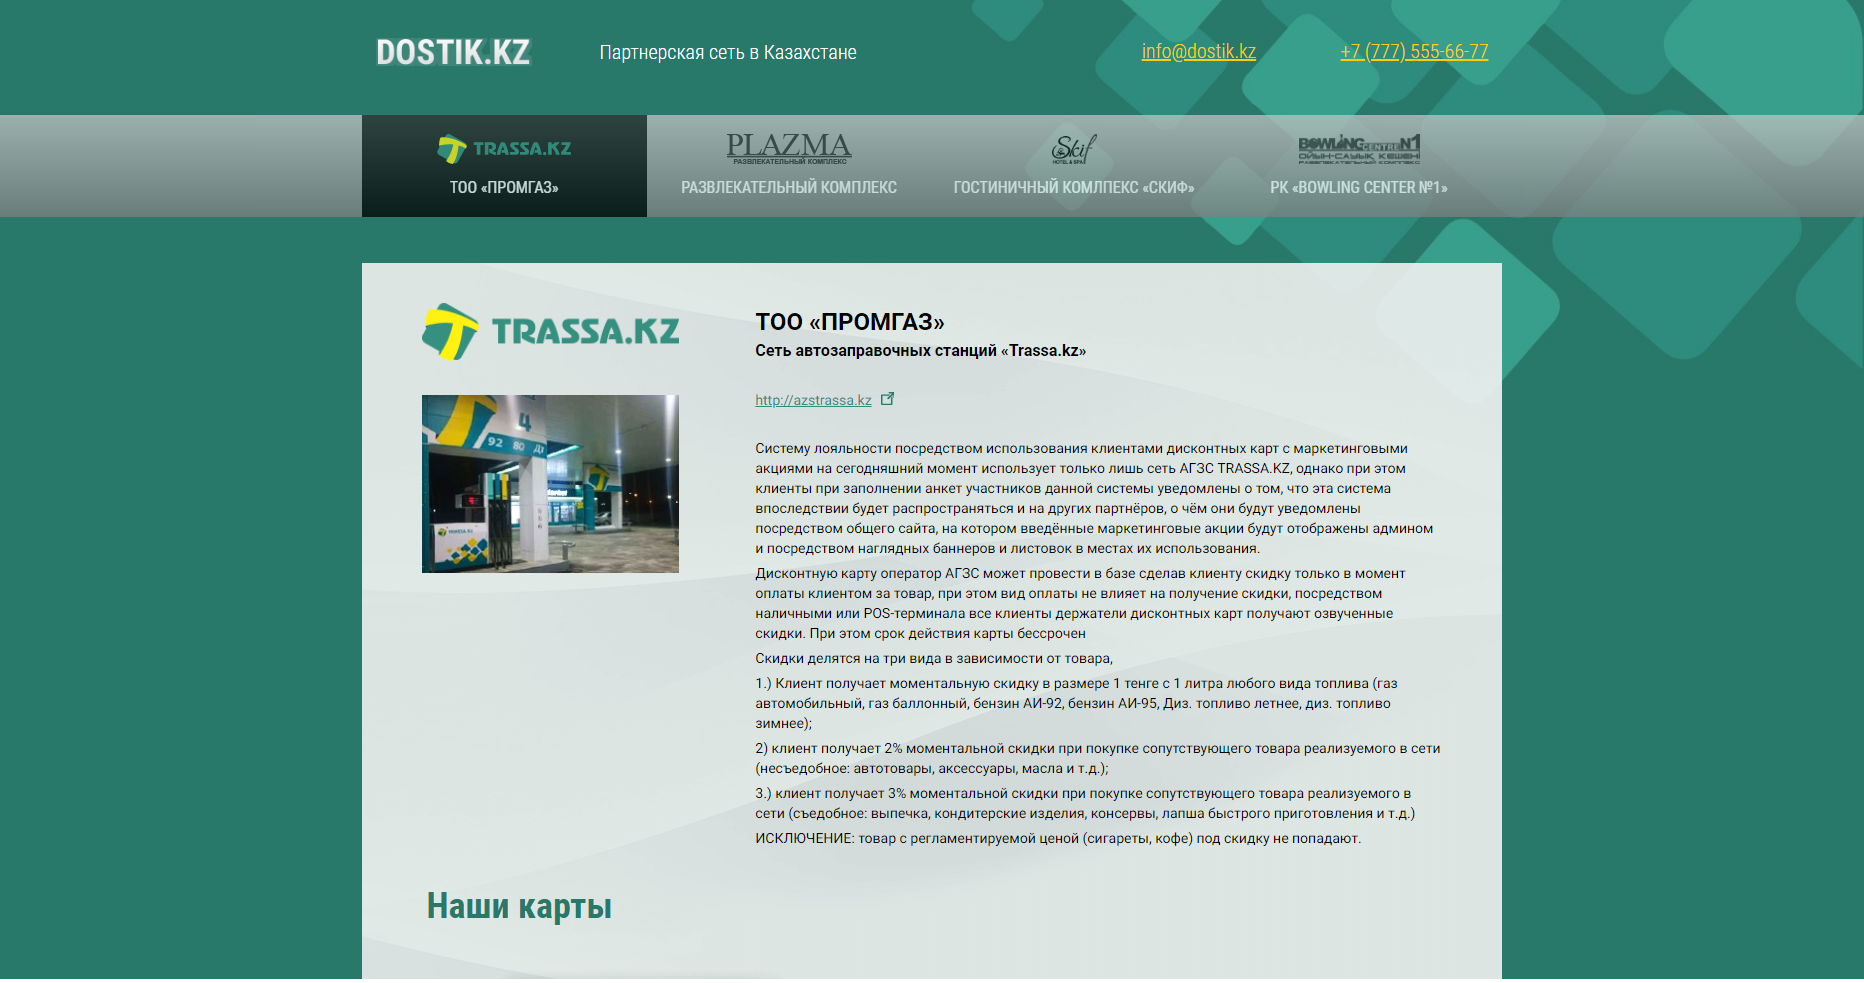 Создание сайта партнерской сети Казахстана Dostik.kz - http://dostik.kz/